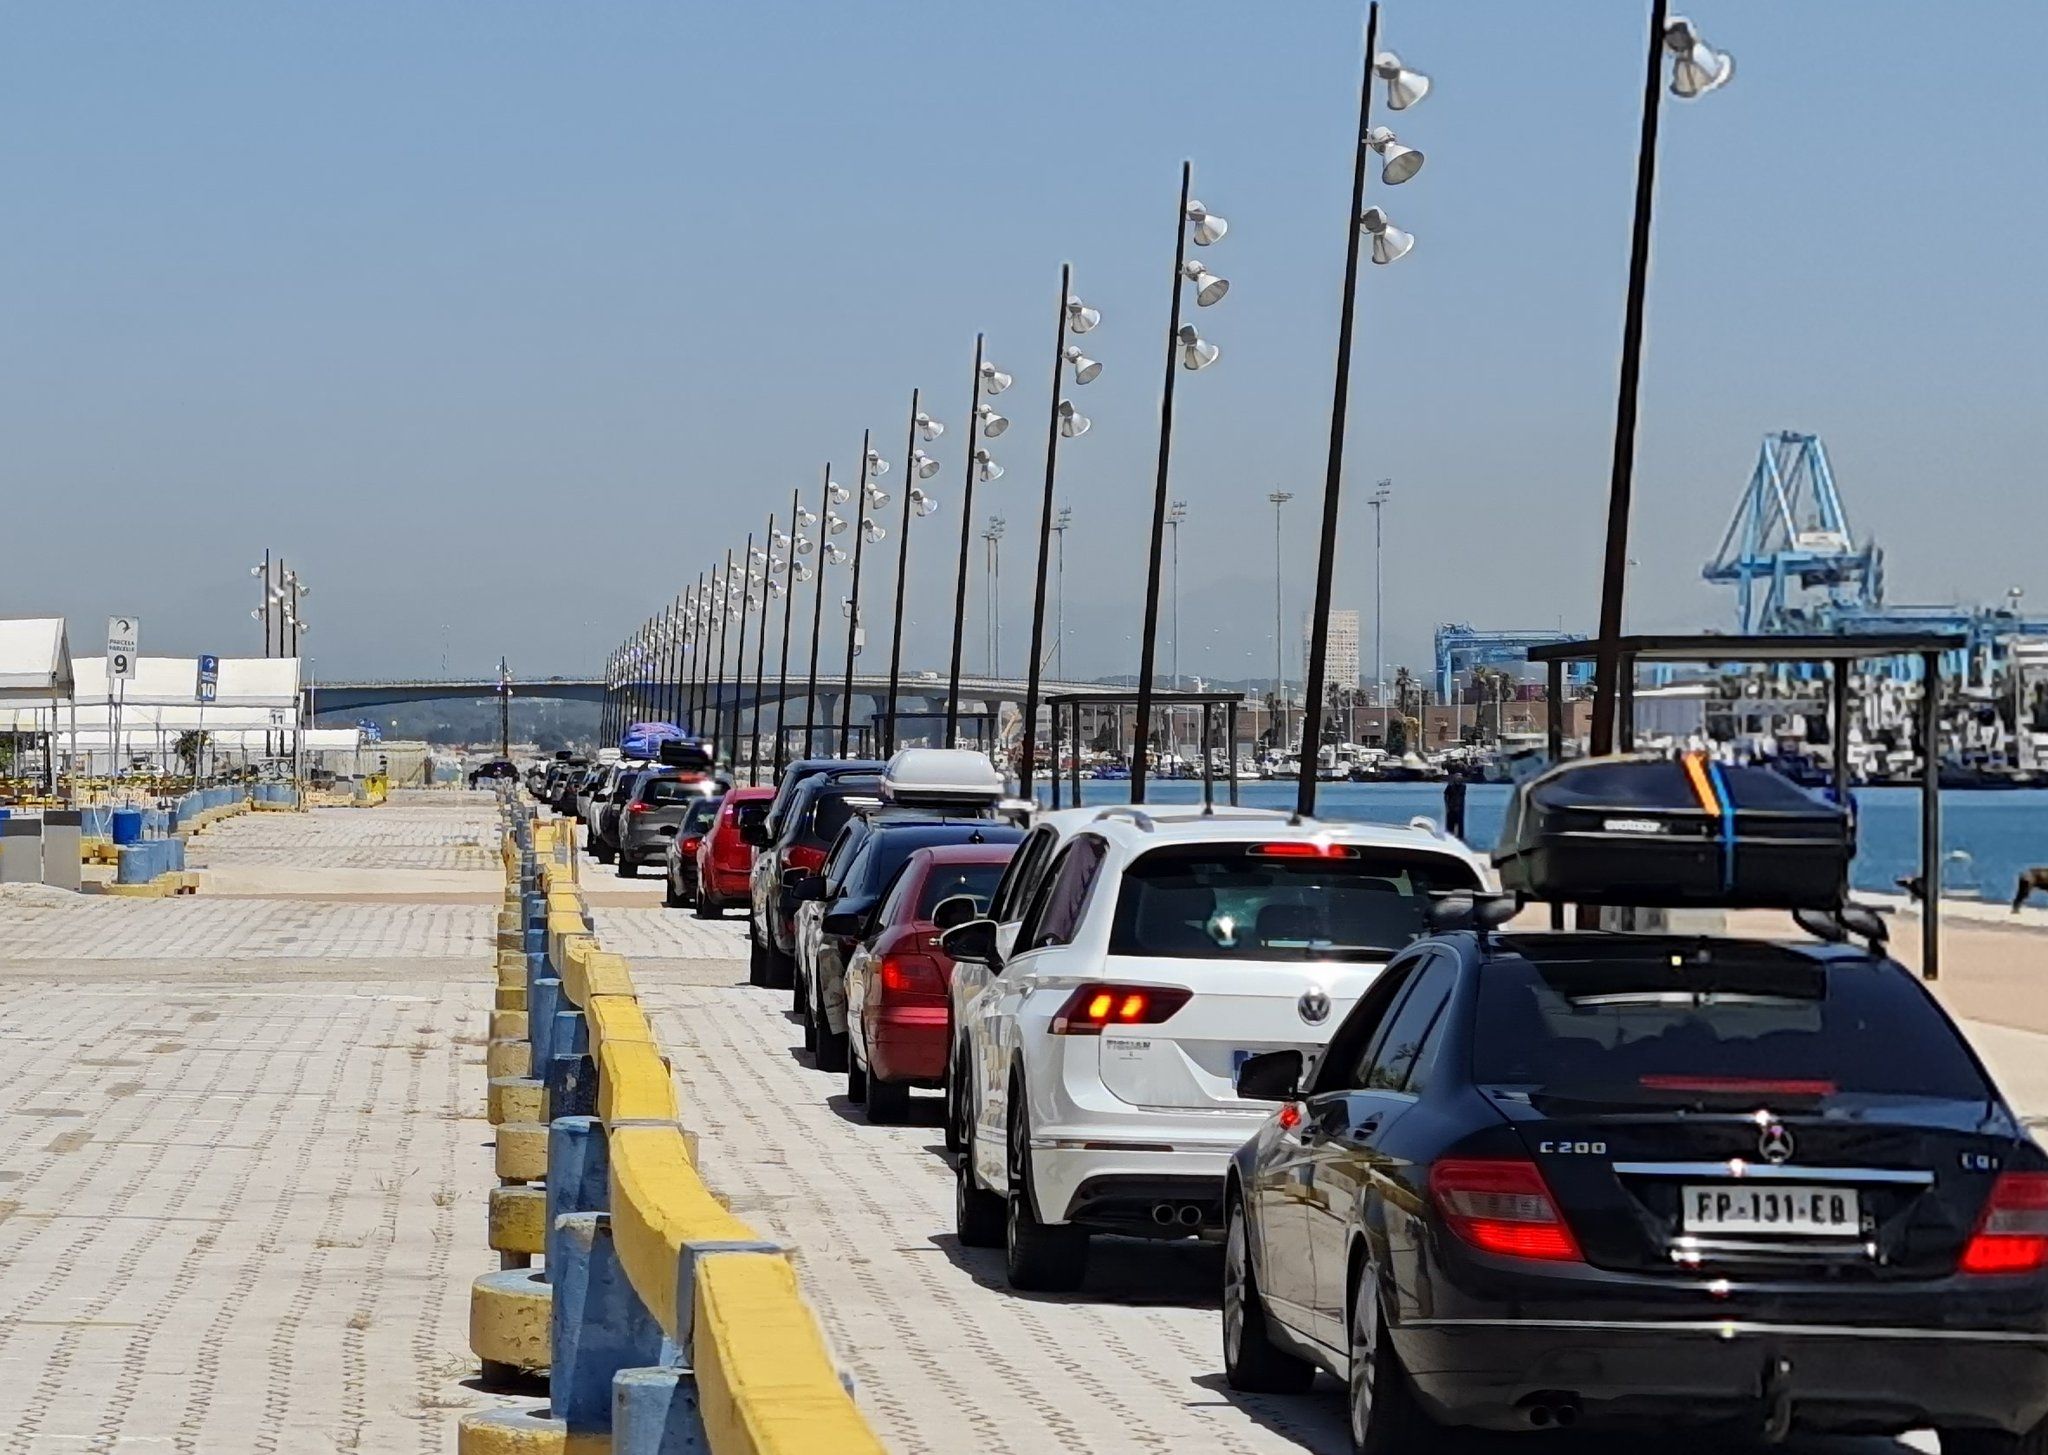 Ascienden a 16.000 los vehículos embarcados en los puertos de Algeciras y Tarifa en el marco de la OPE. Foto: APBA.